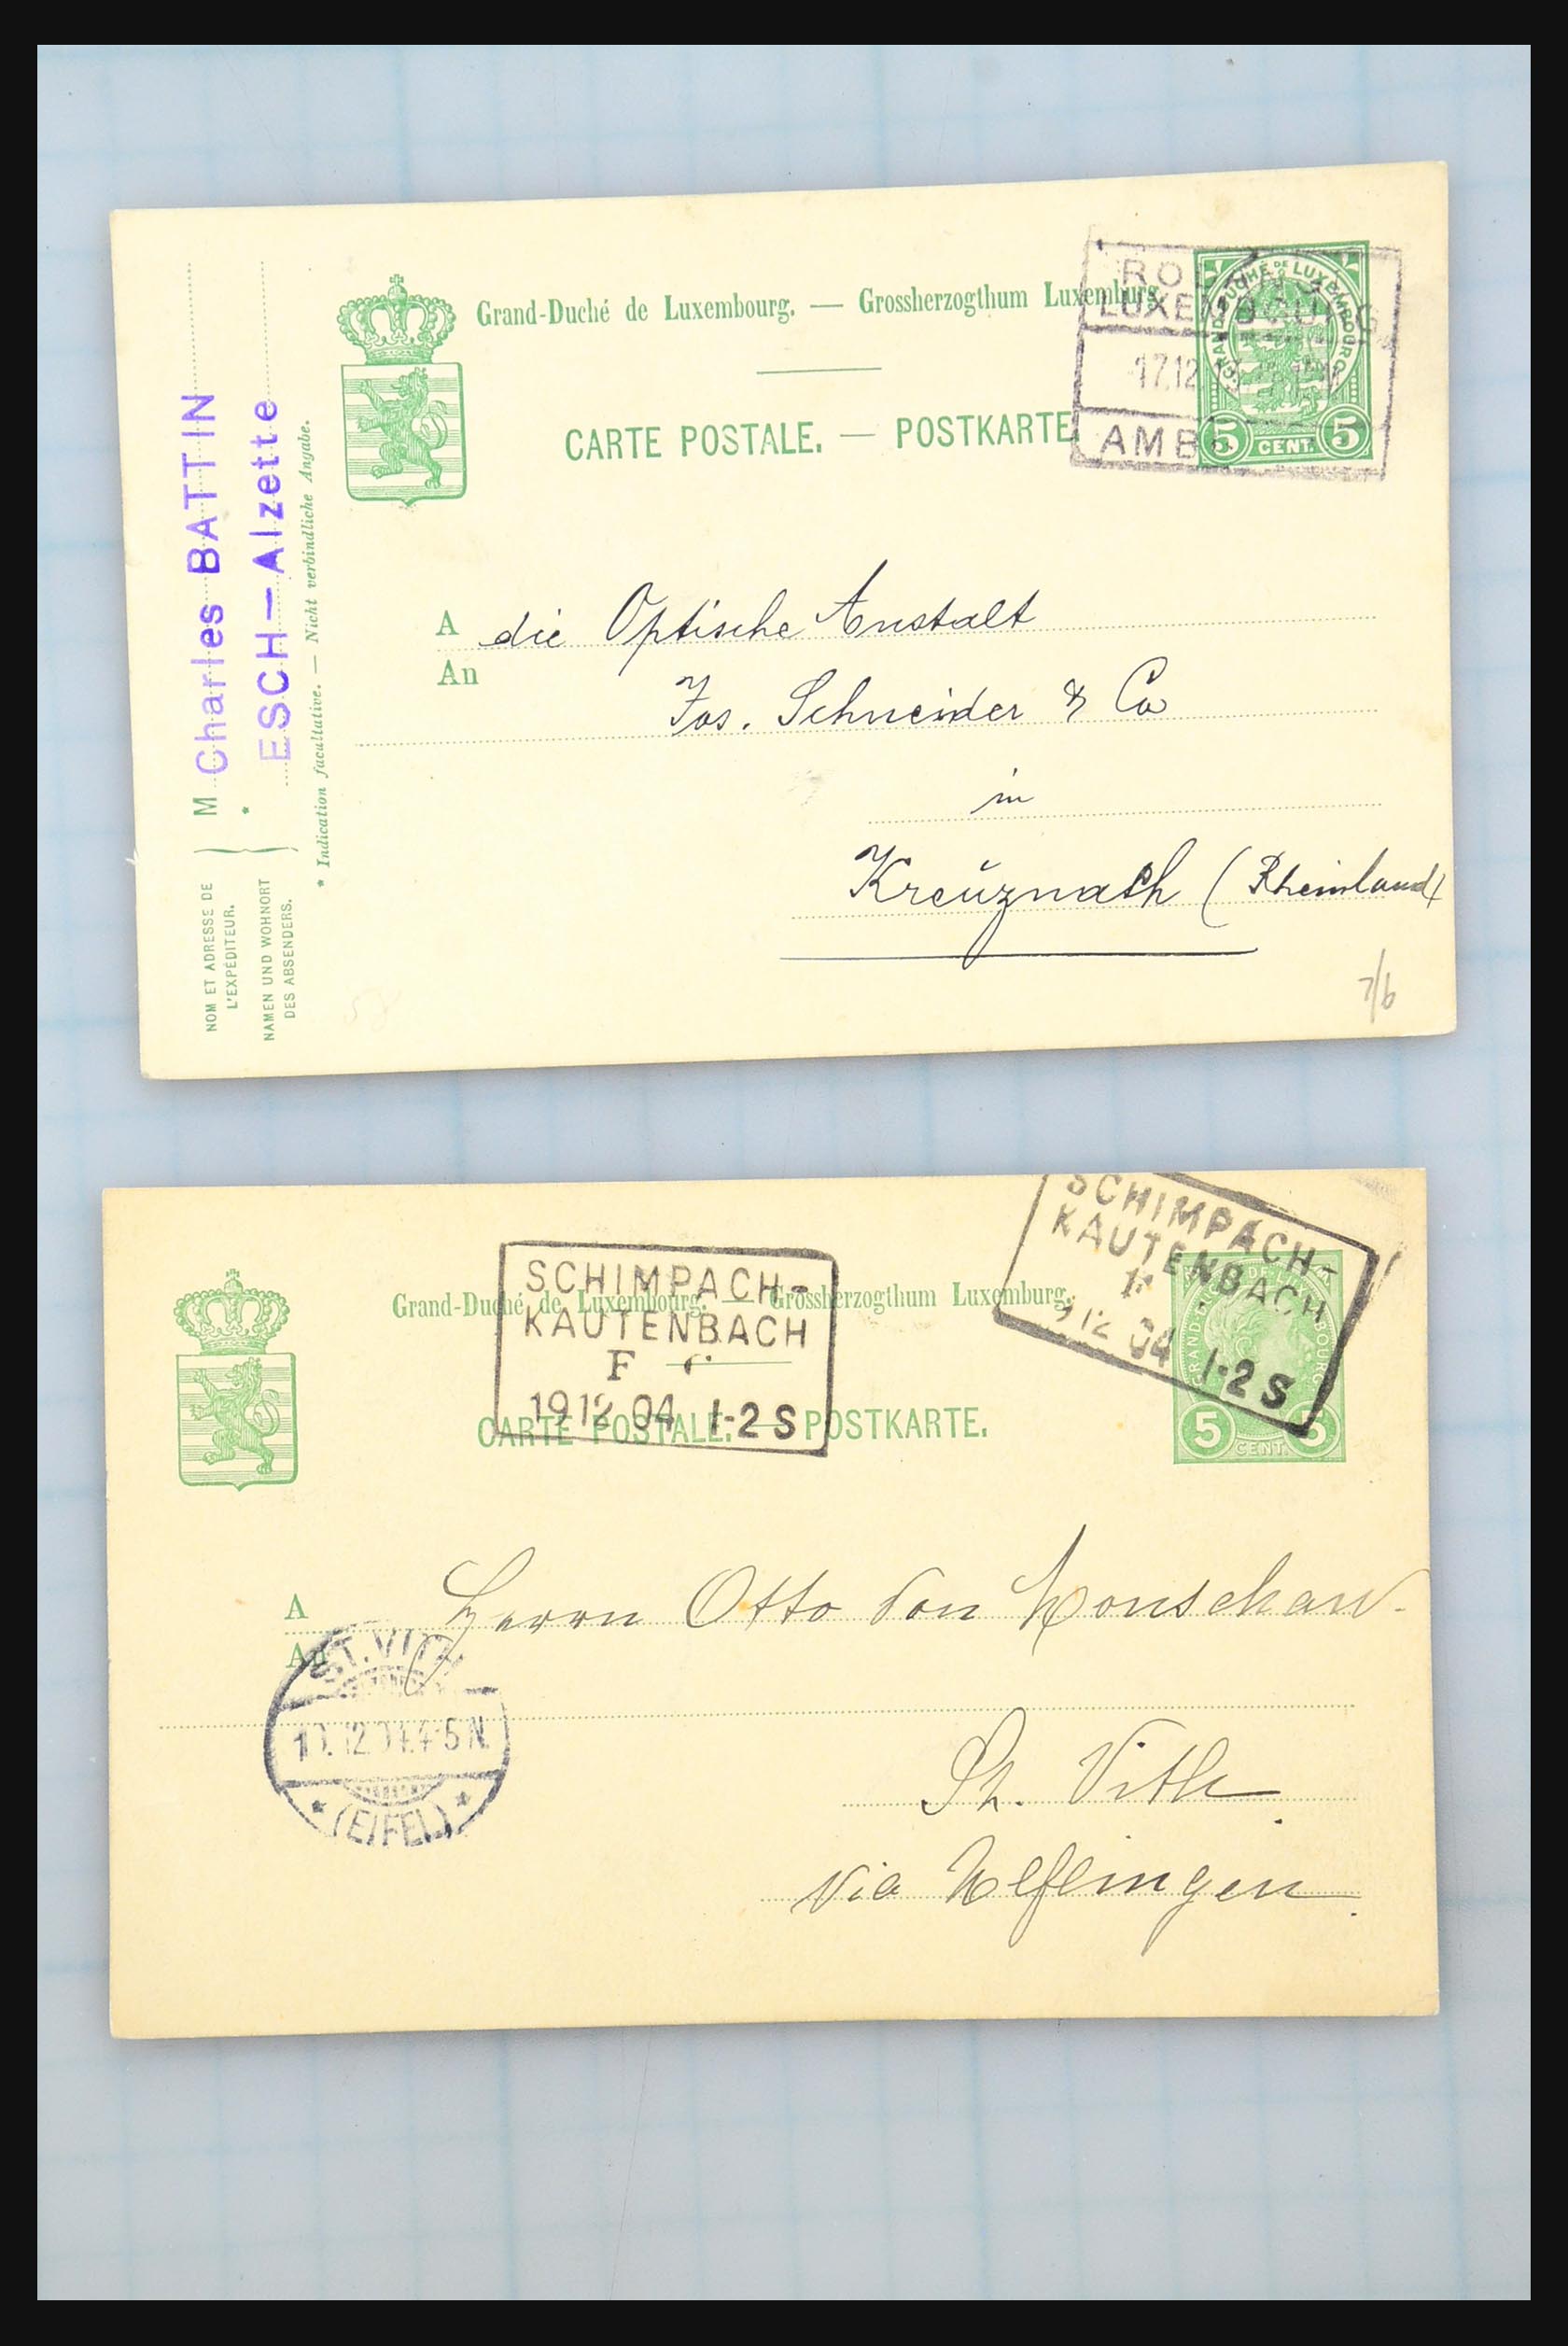 31358 095 - 31358 Portugal/Luxemburg/Griekenland brieven 1880-1960.